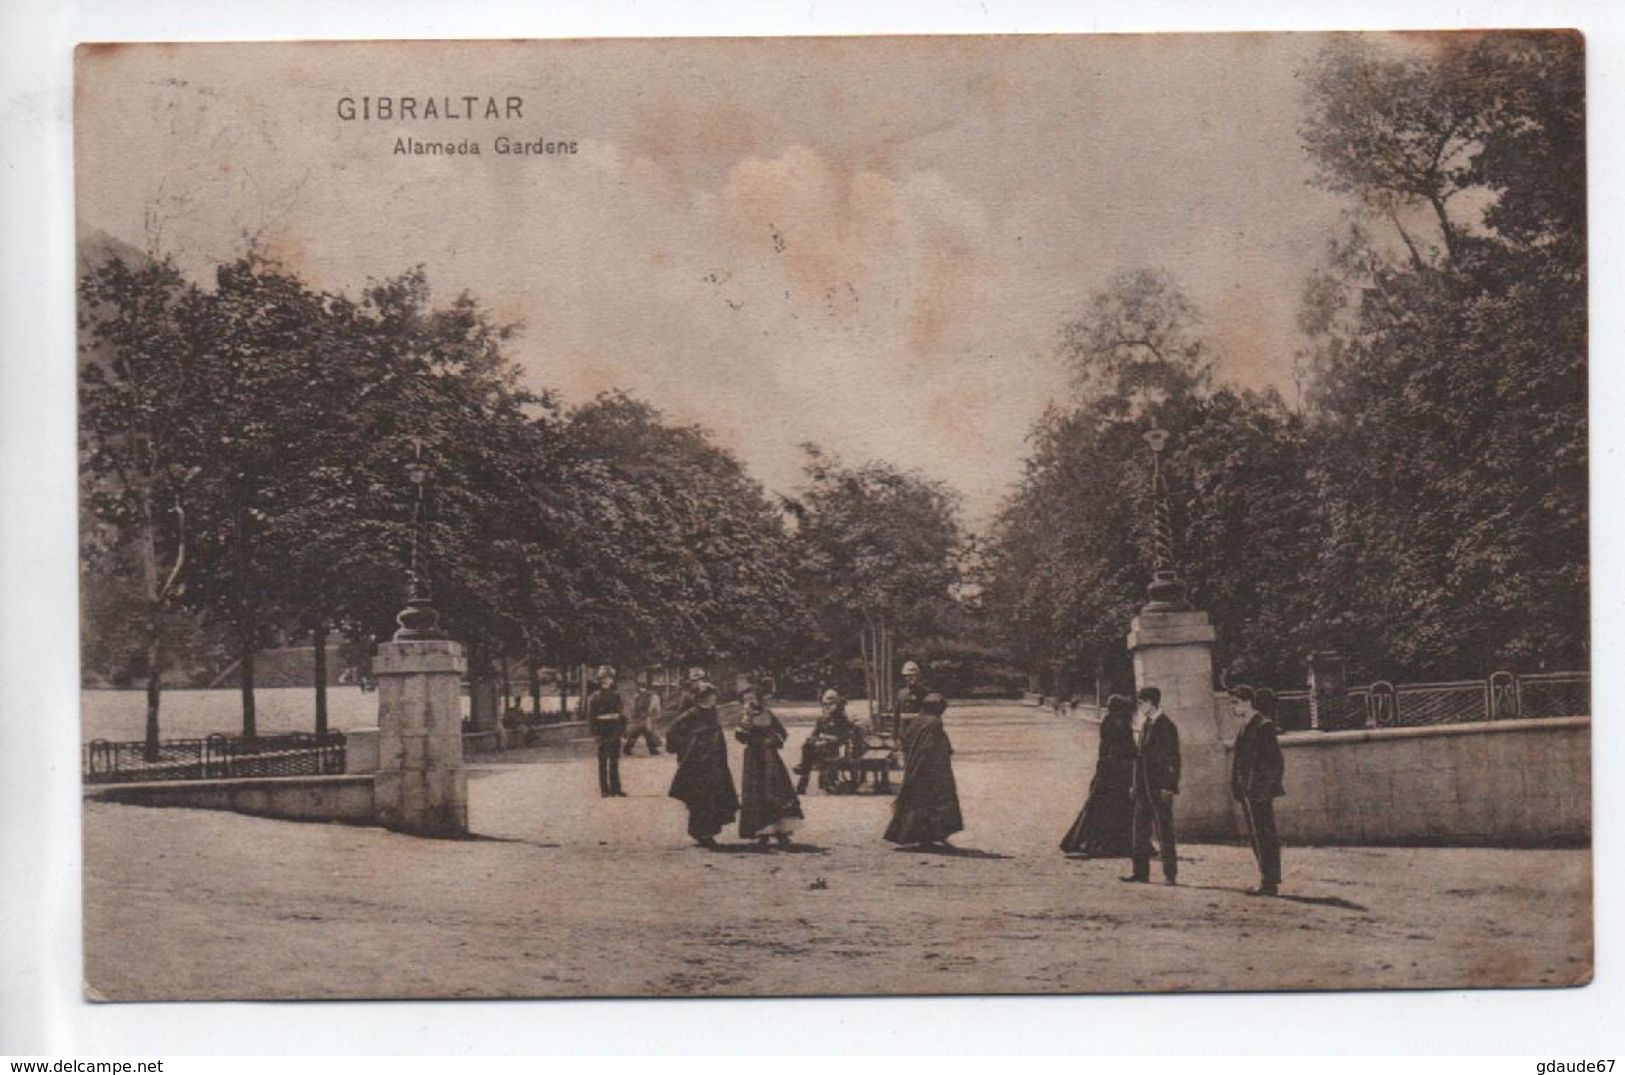 GIBRALTAR - ALAMEDA GARDENS - Gibraltar